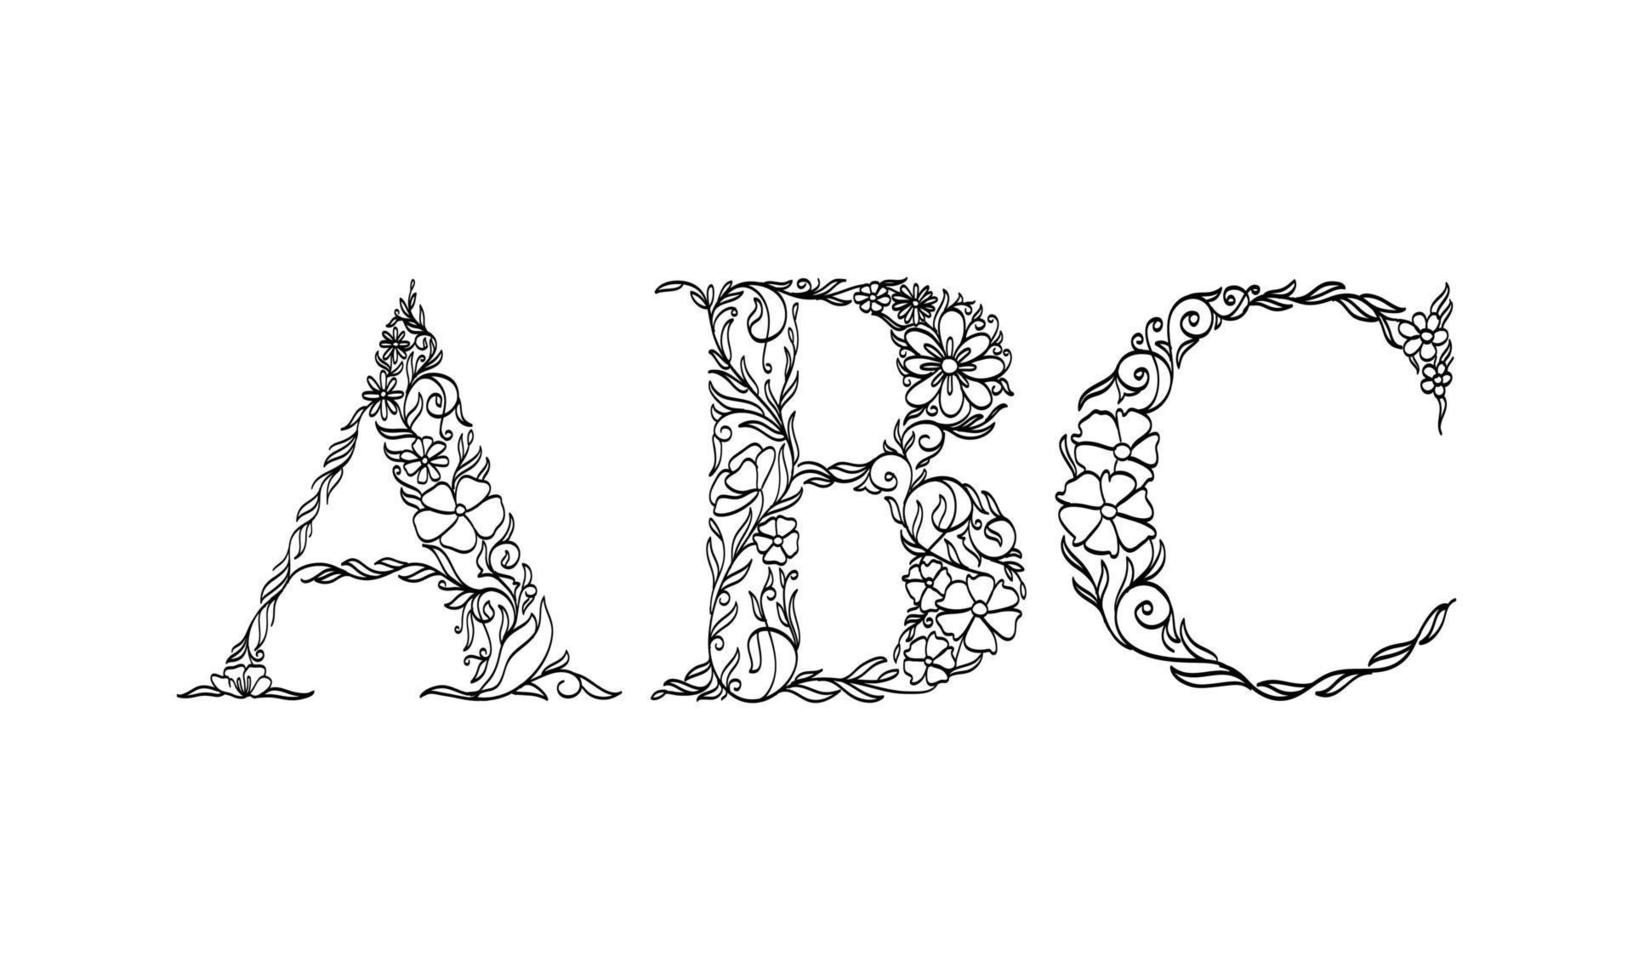 Ilustración floral alfabeto a, b, c, fuente gráfica vectorial hecha por flores y hojas, arte lineal dibujado a mano creativo para la naturaleza abstracta y natural, apariencia en una decoración de diseño monocromático único. vector